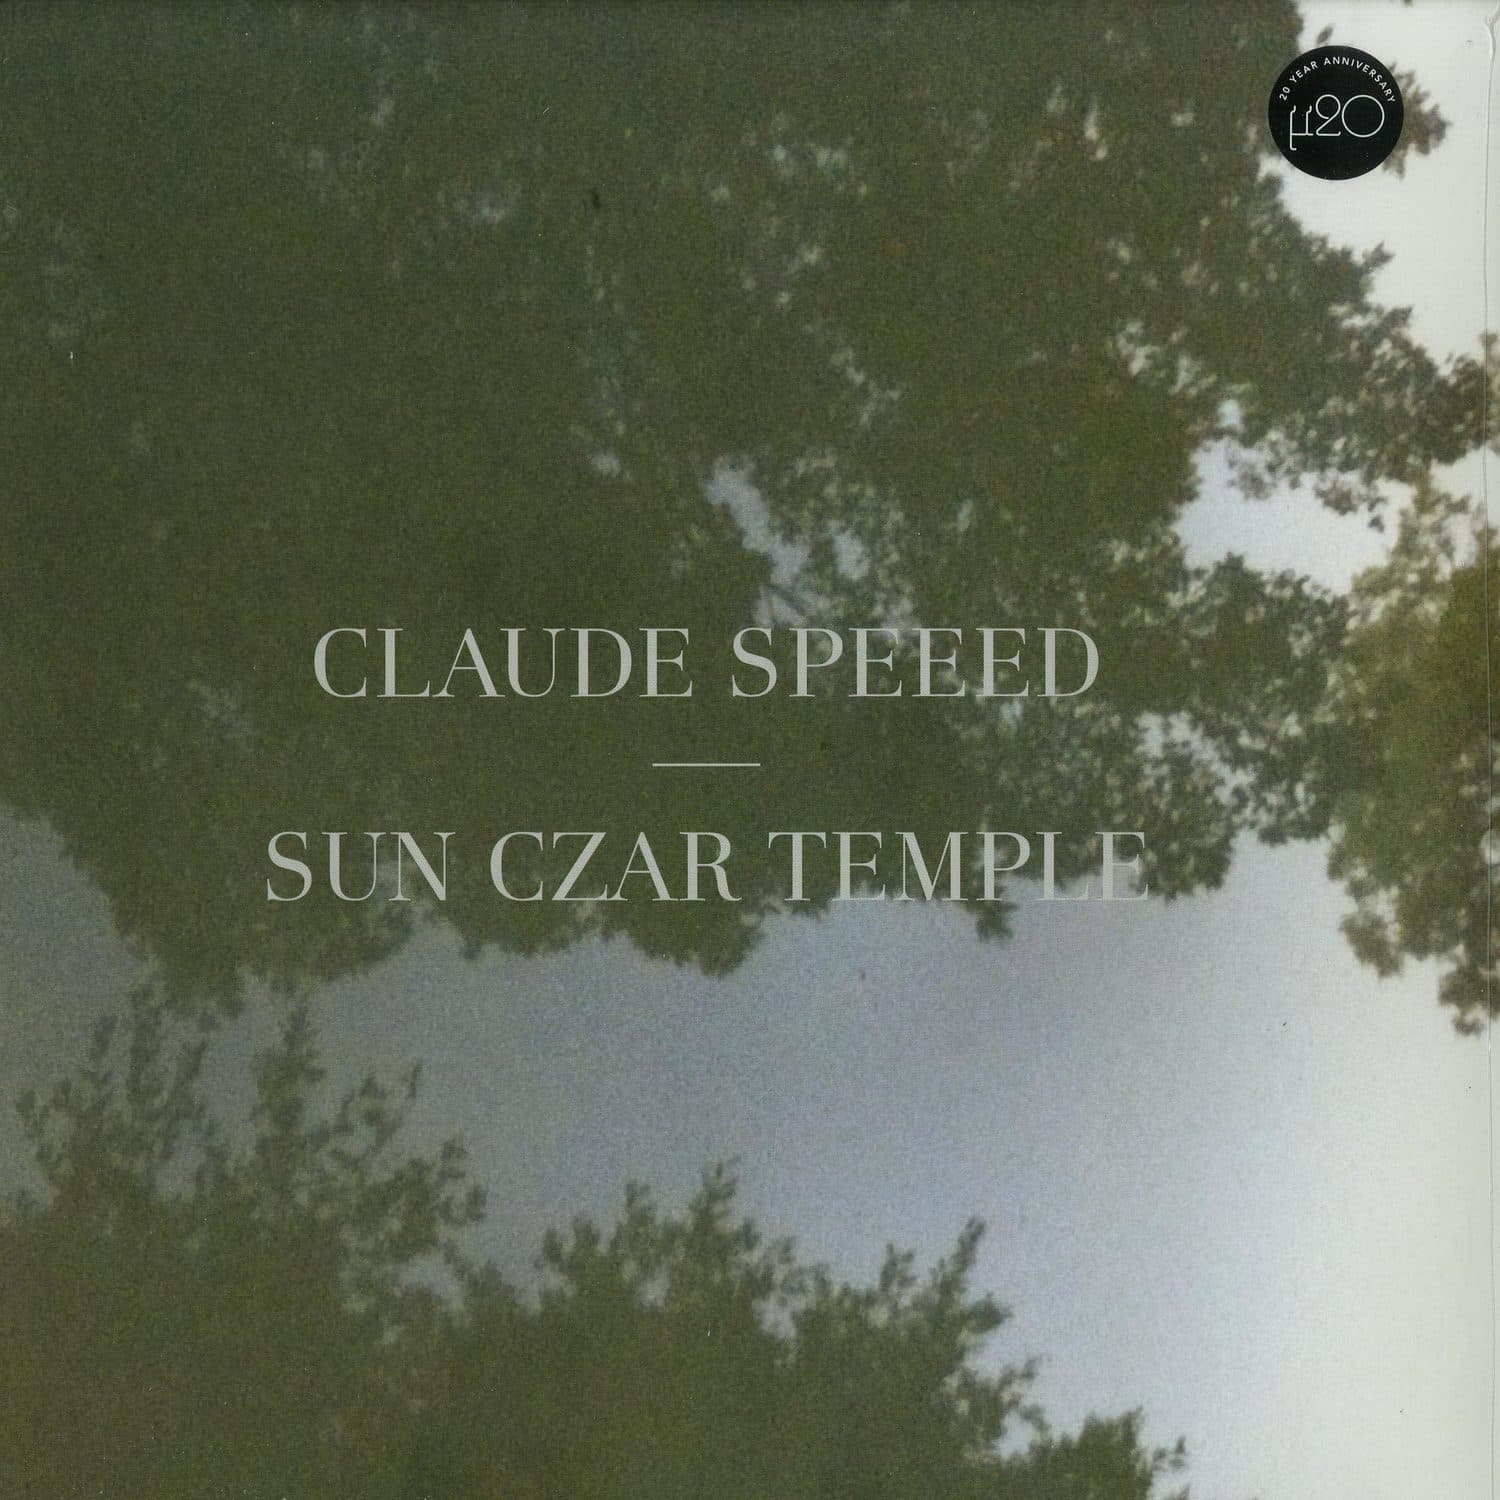 Claude Speed - SUN CZAR TEMPLE